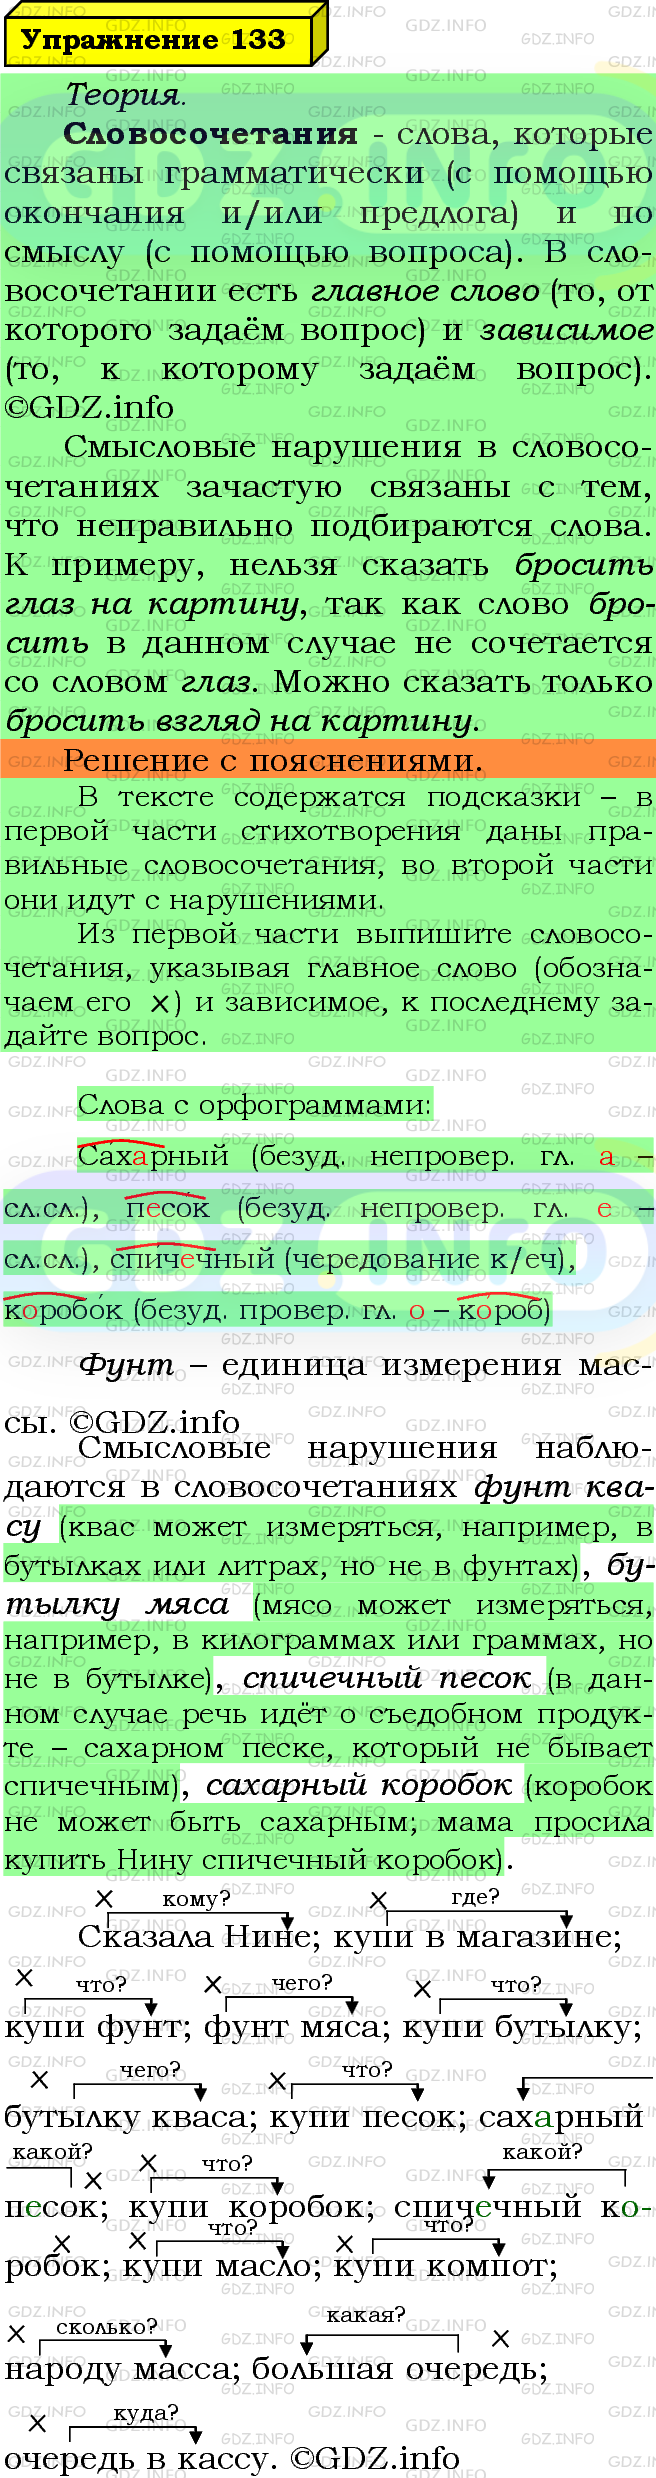 Фото решения 6: Номер №133 из ГДЗ по Русскому языку 5 класс: Ладыженская Т.А. 2019г.